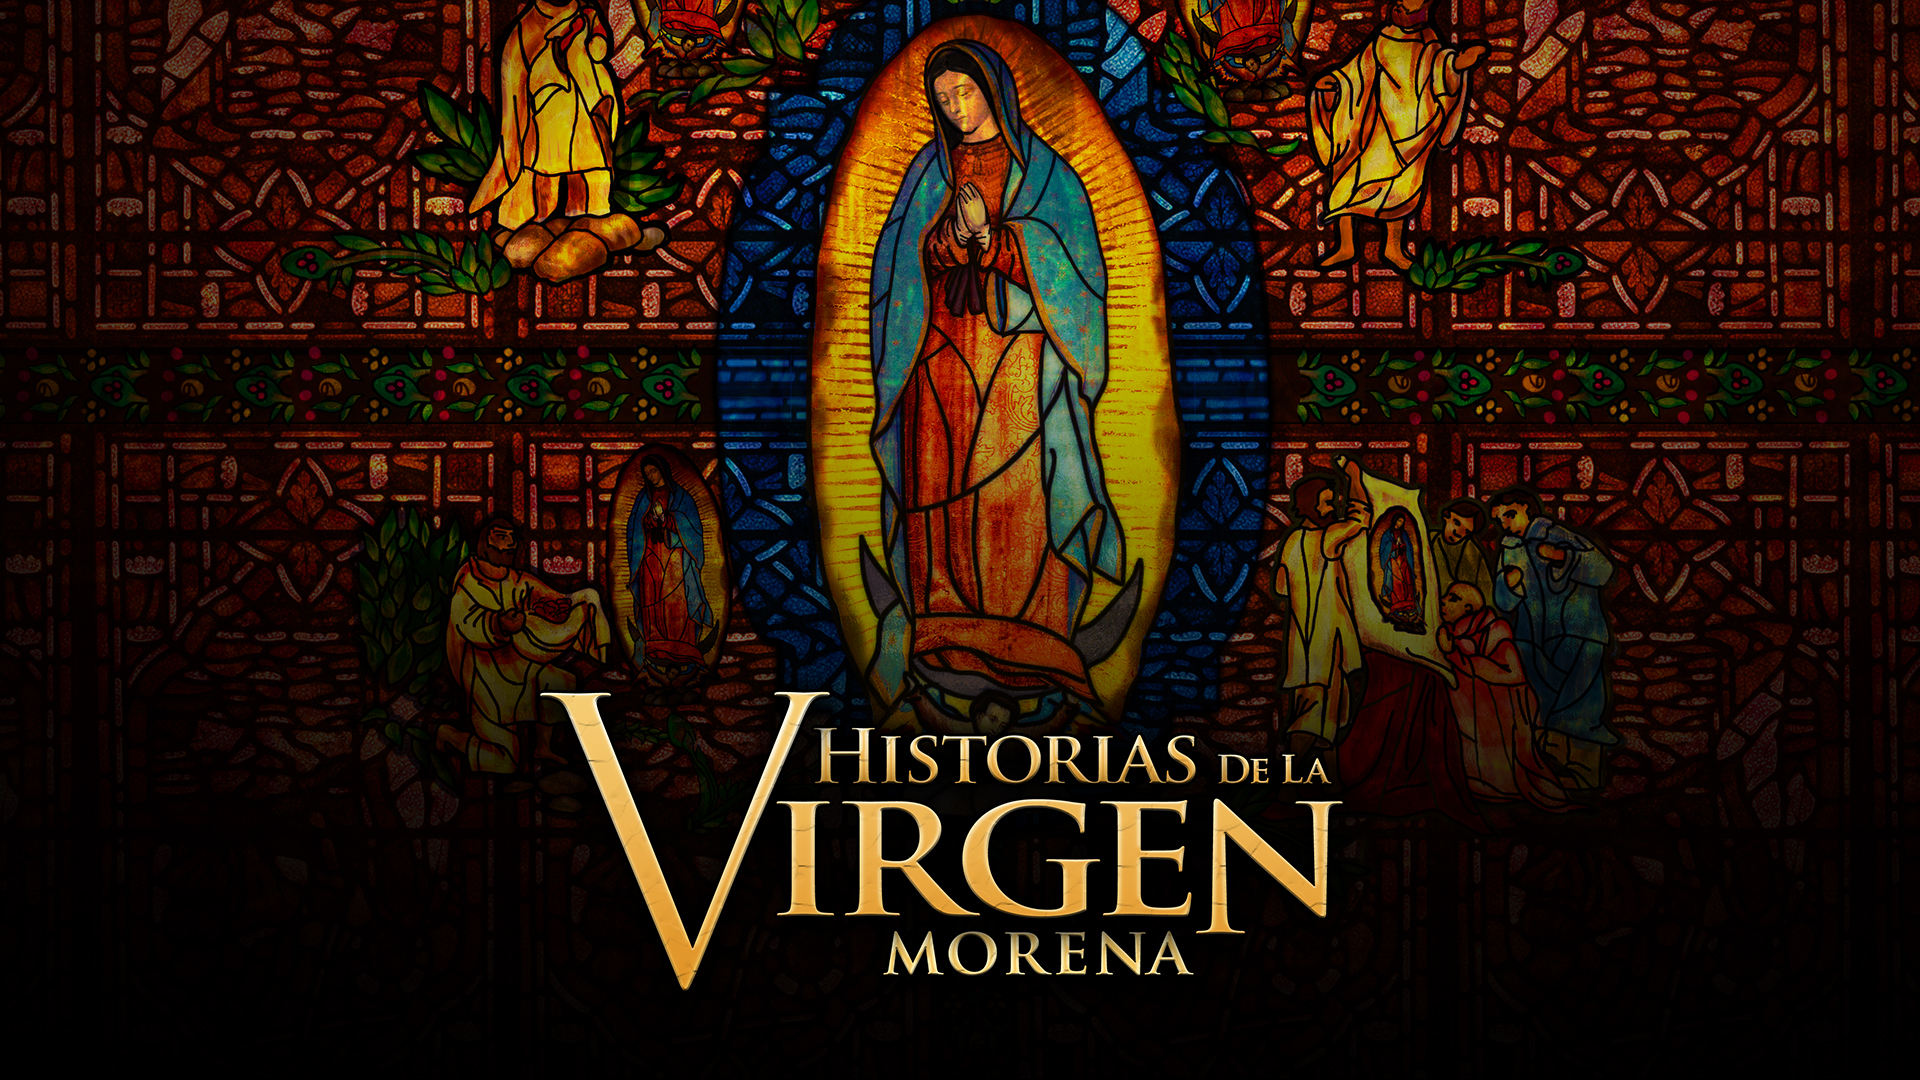 Historias de la Virgen Morena TV Show | Telemundo1920 x 1080